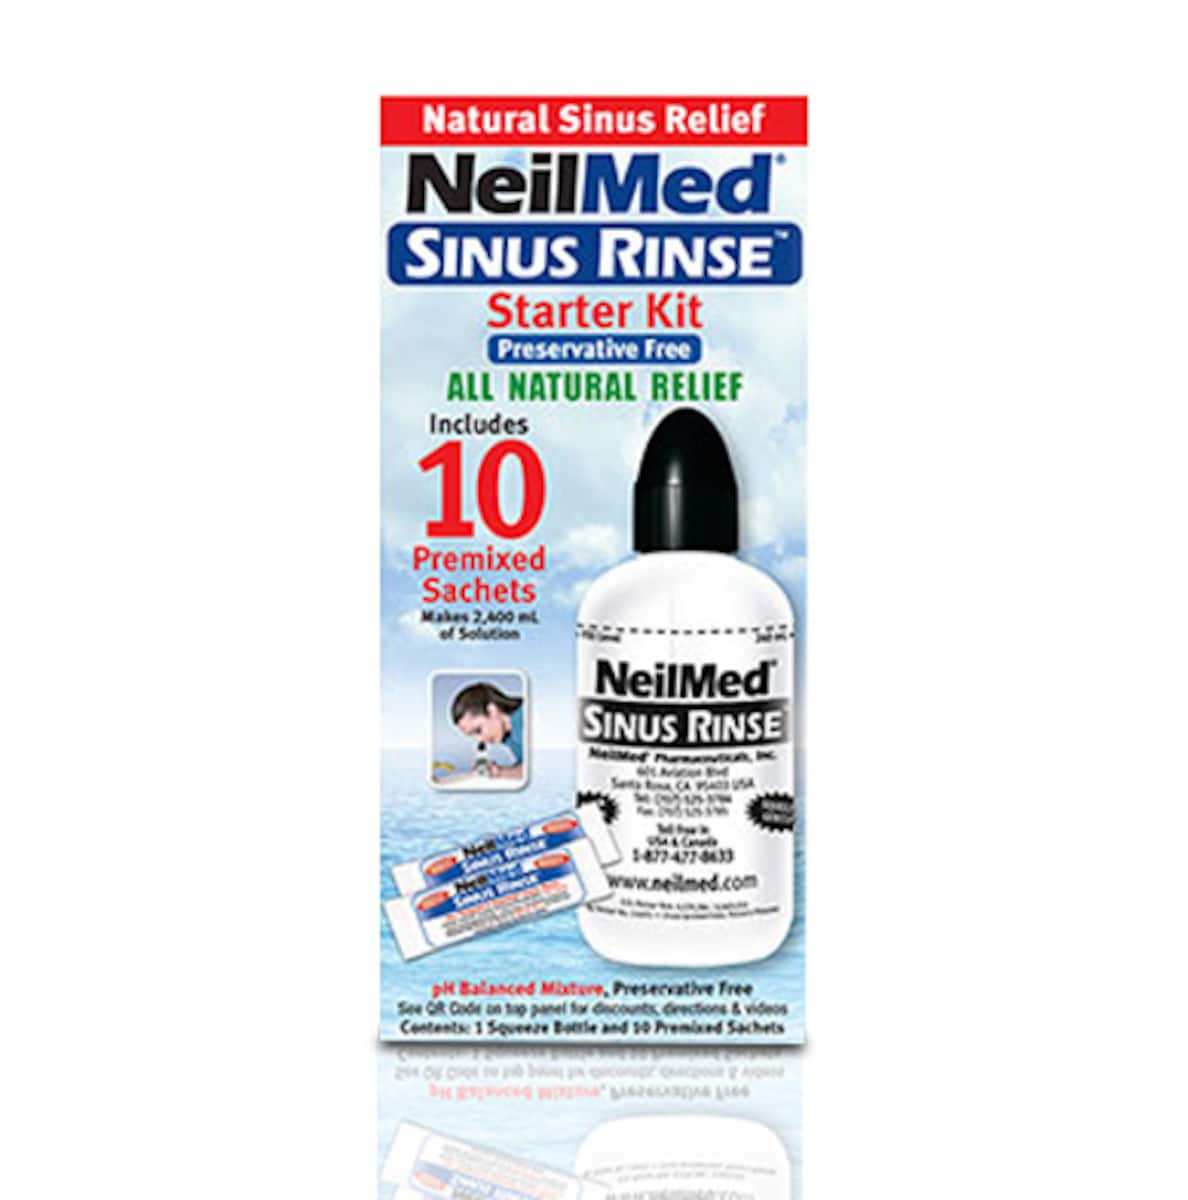 NeilMed Sinus Rinse Starter Kit with 10 Premixed Sachets